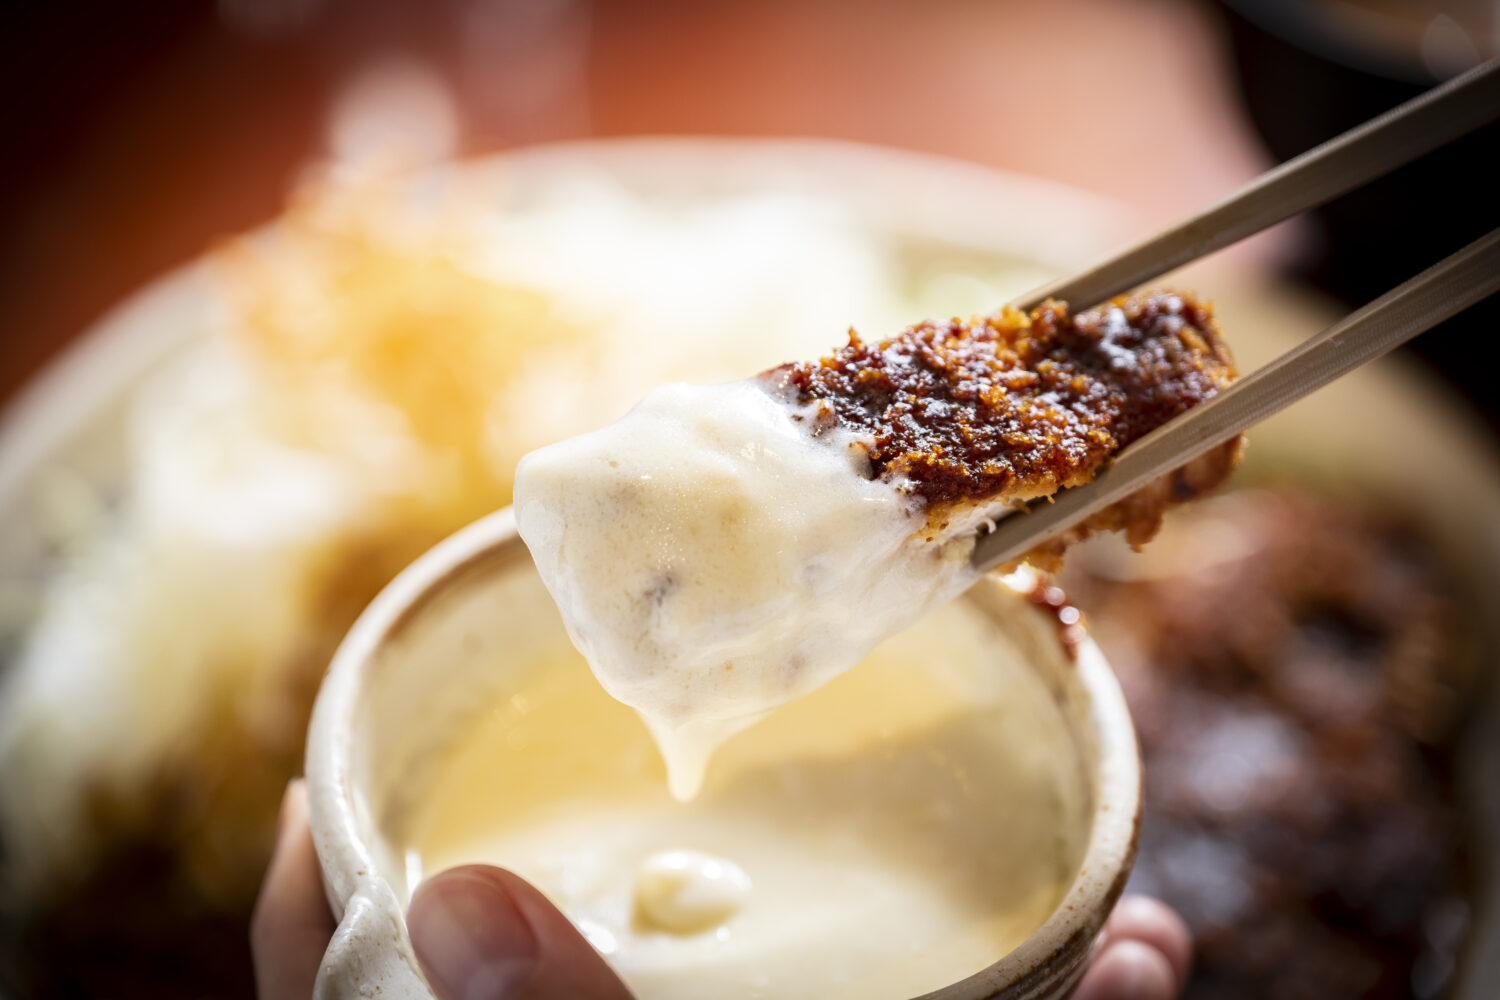 クリームチーズのまろやかさとみその甘さが絶妙にマッチしてこれはヤバい。